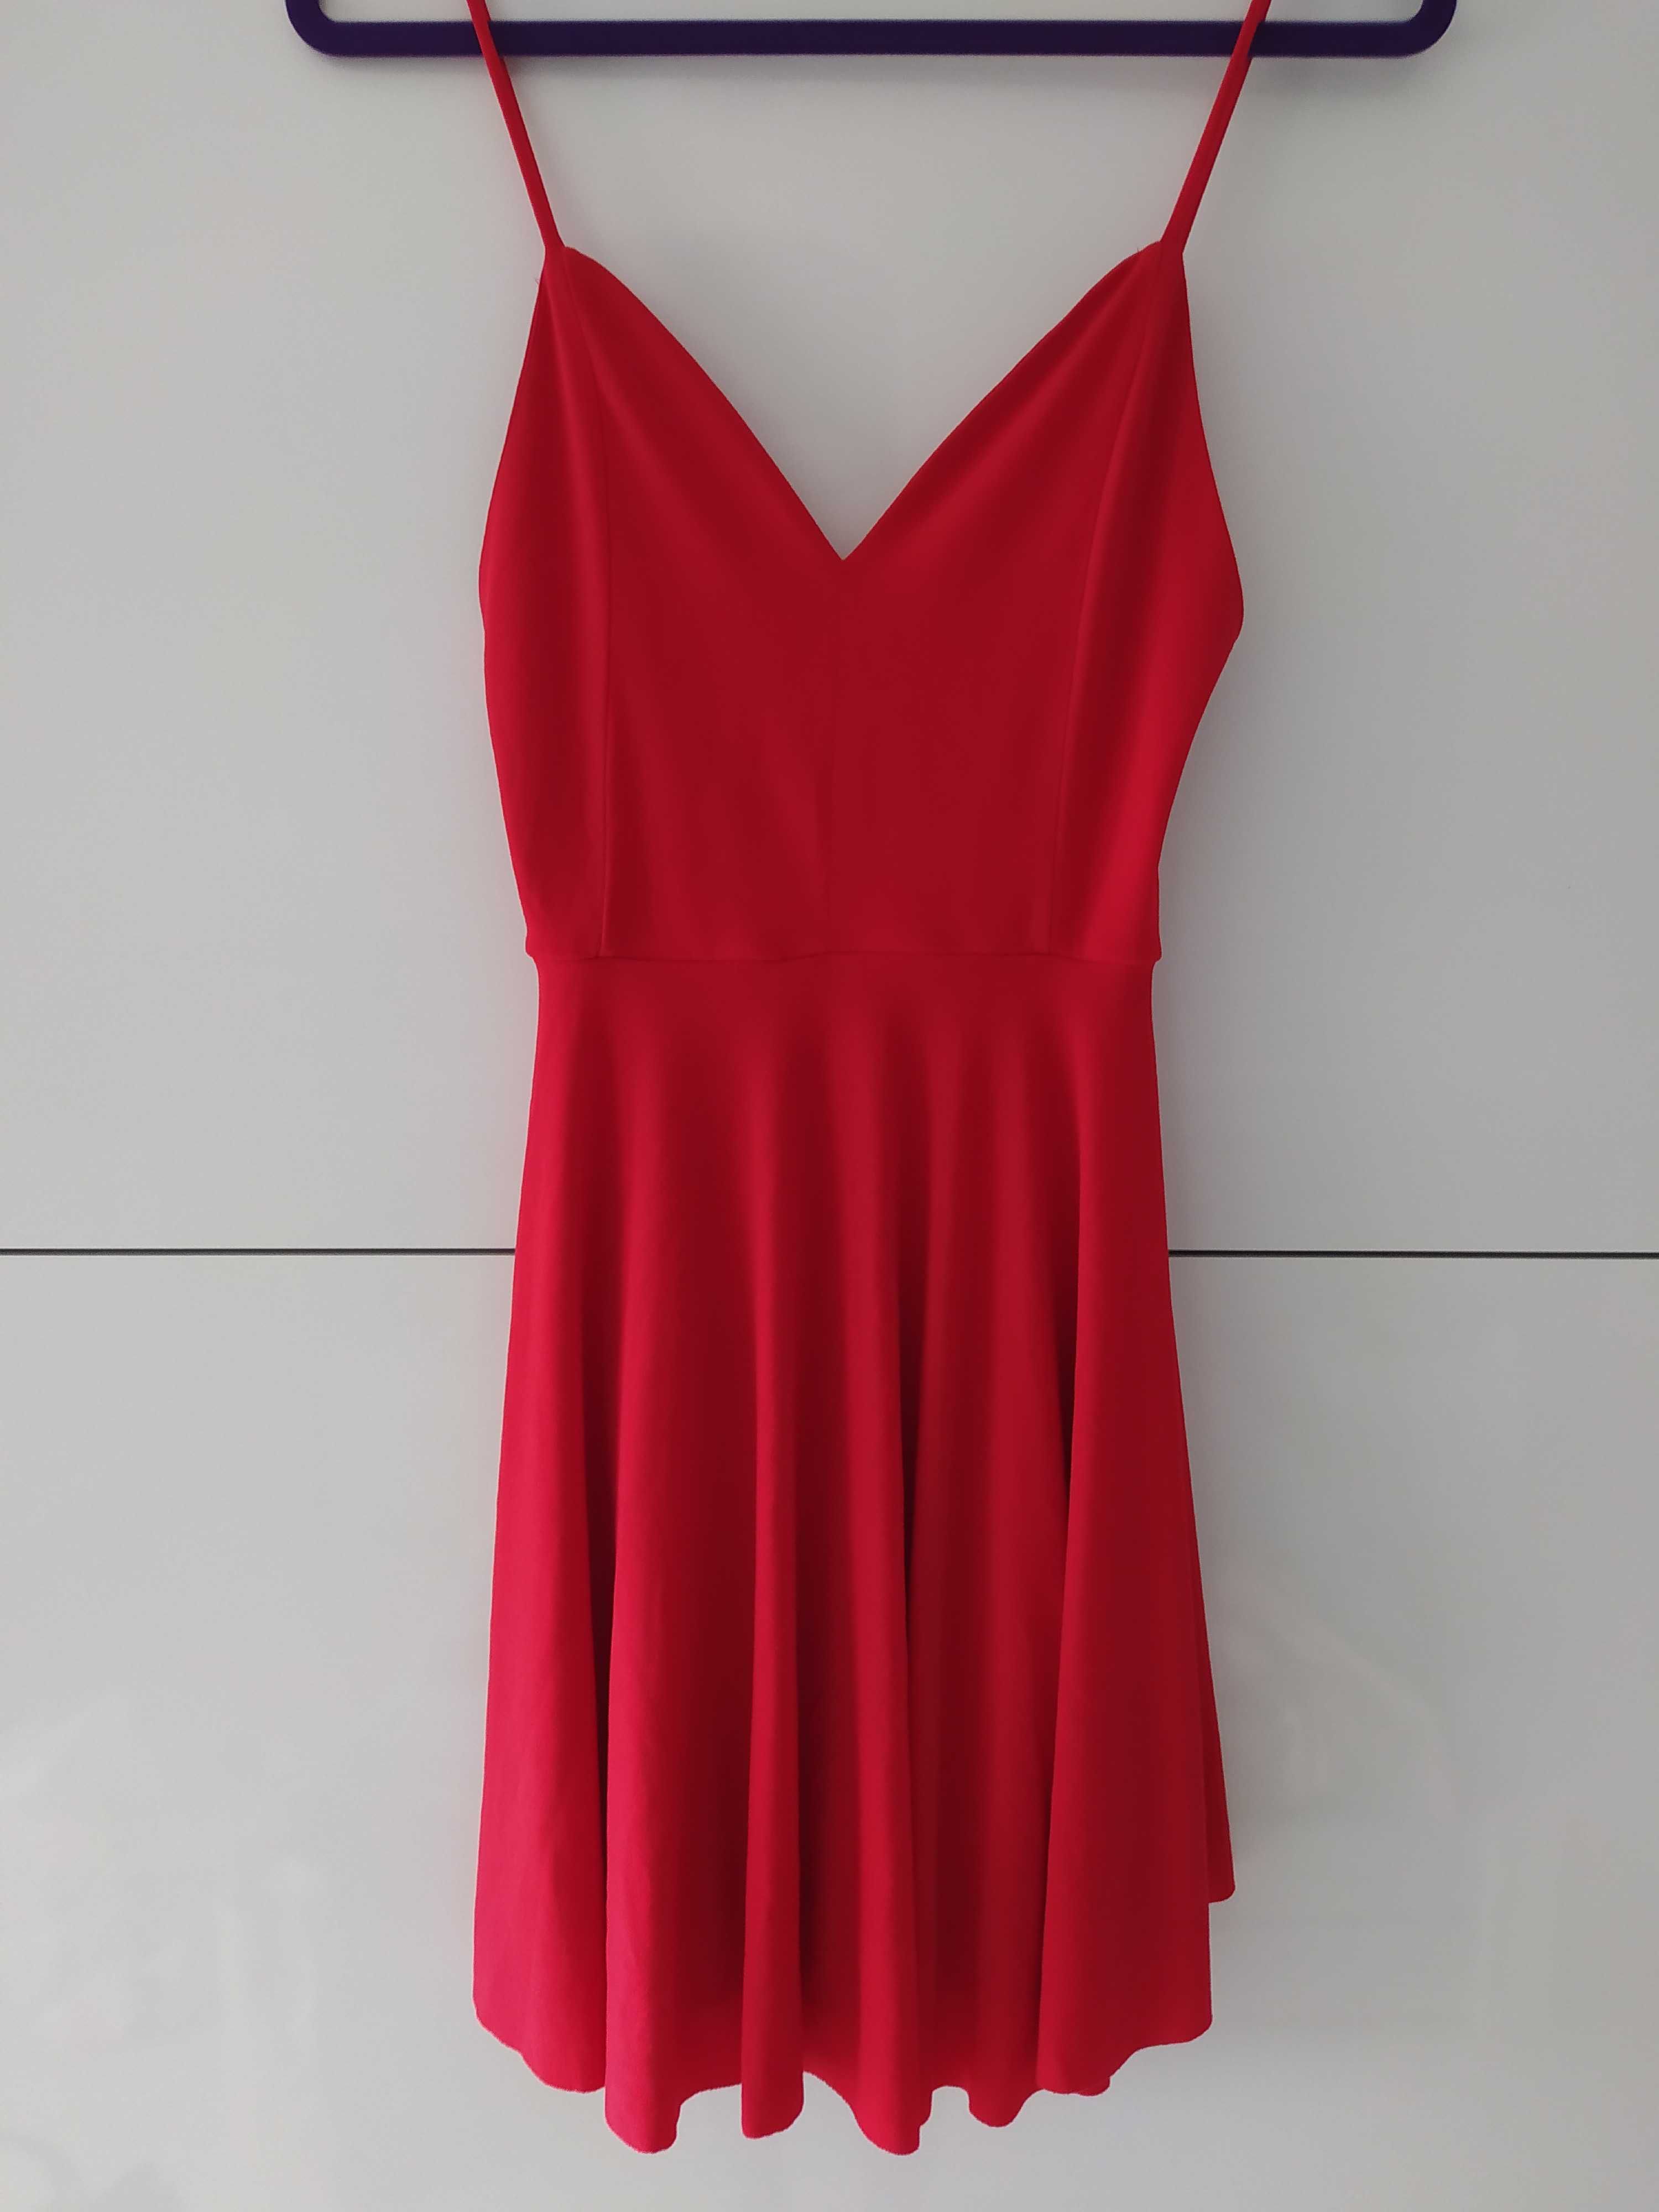 sukienka S 36 czerwona stan idealny odkryte plecy